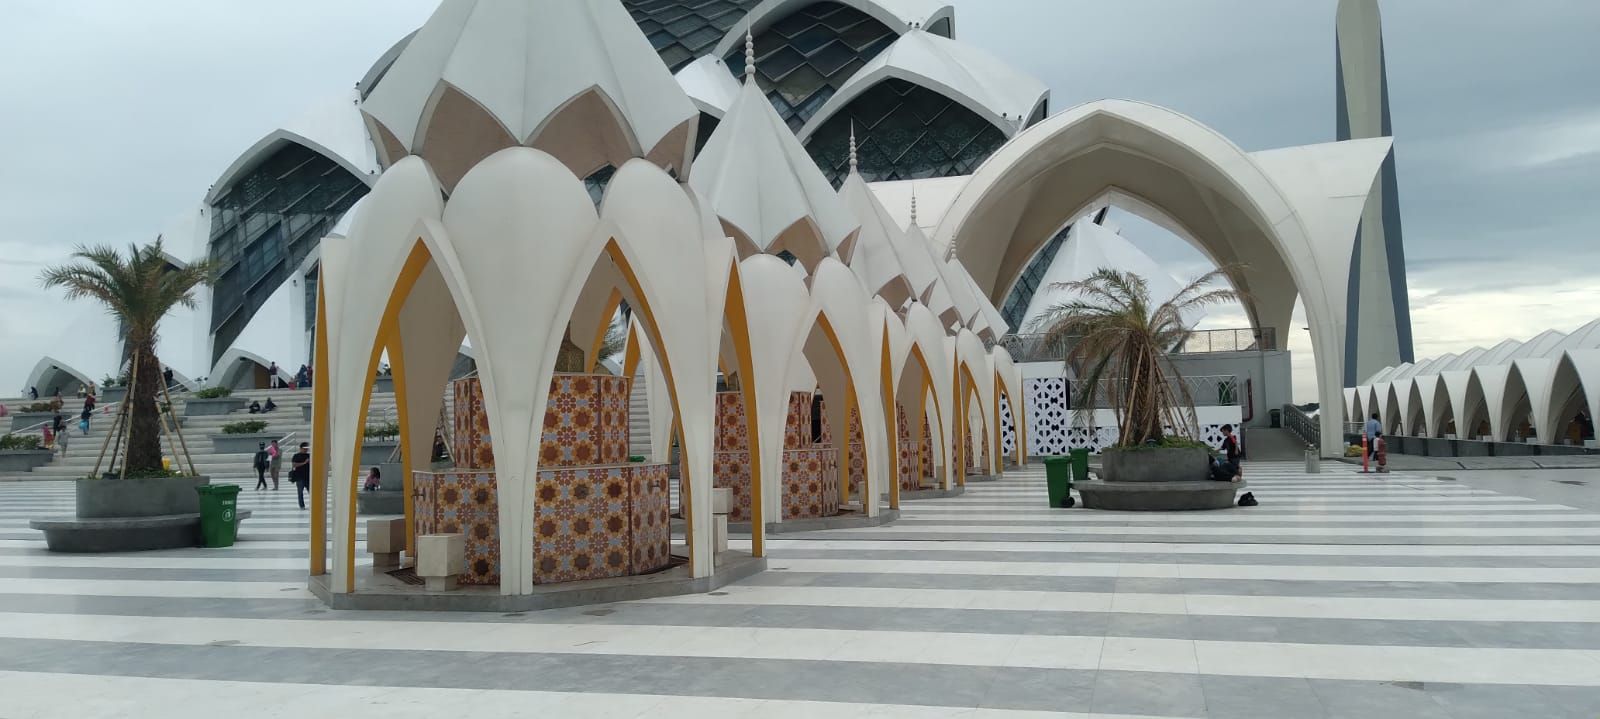 Bangunan unik ini adalah tempat Wudhu di Halaman Masjid Al Jabbar Gedebage Bandung